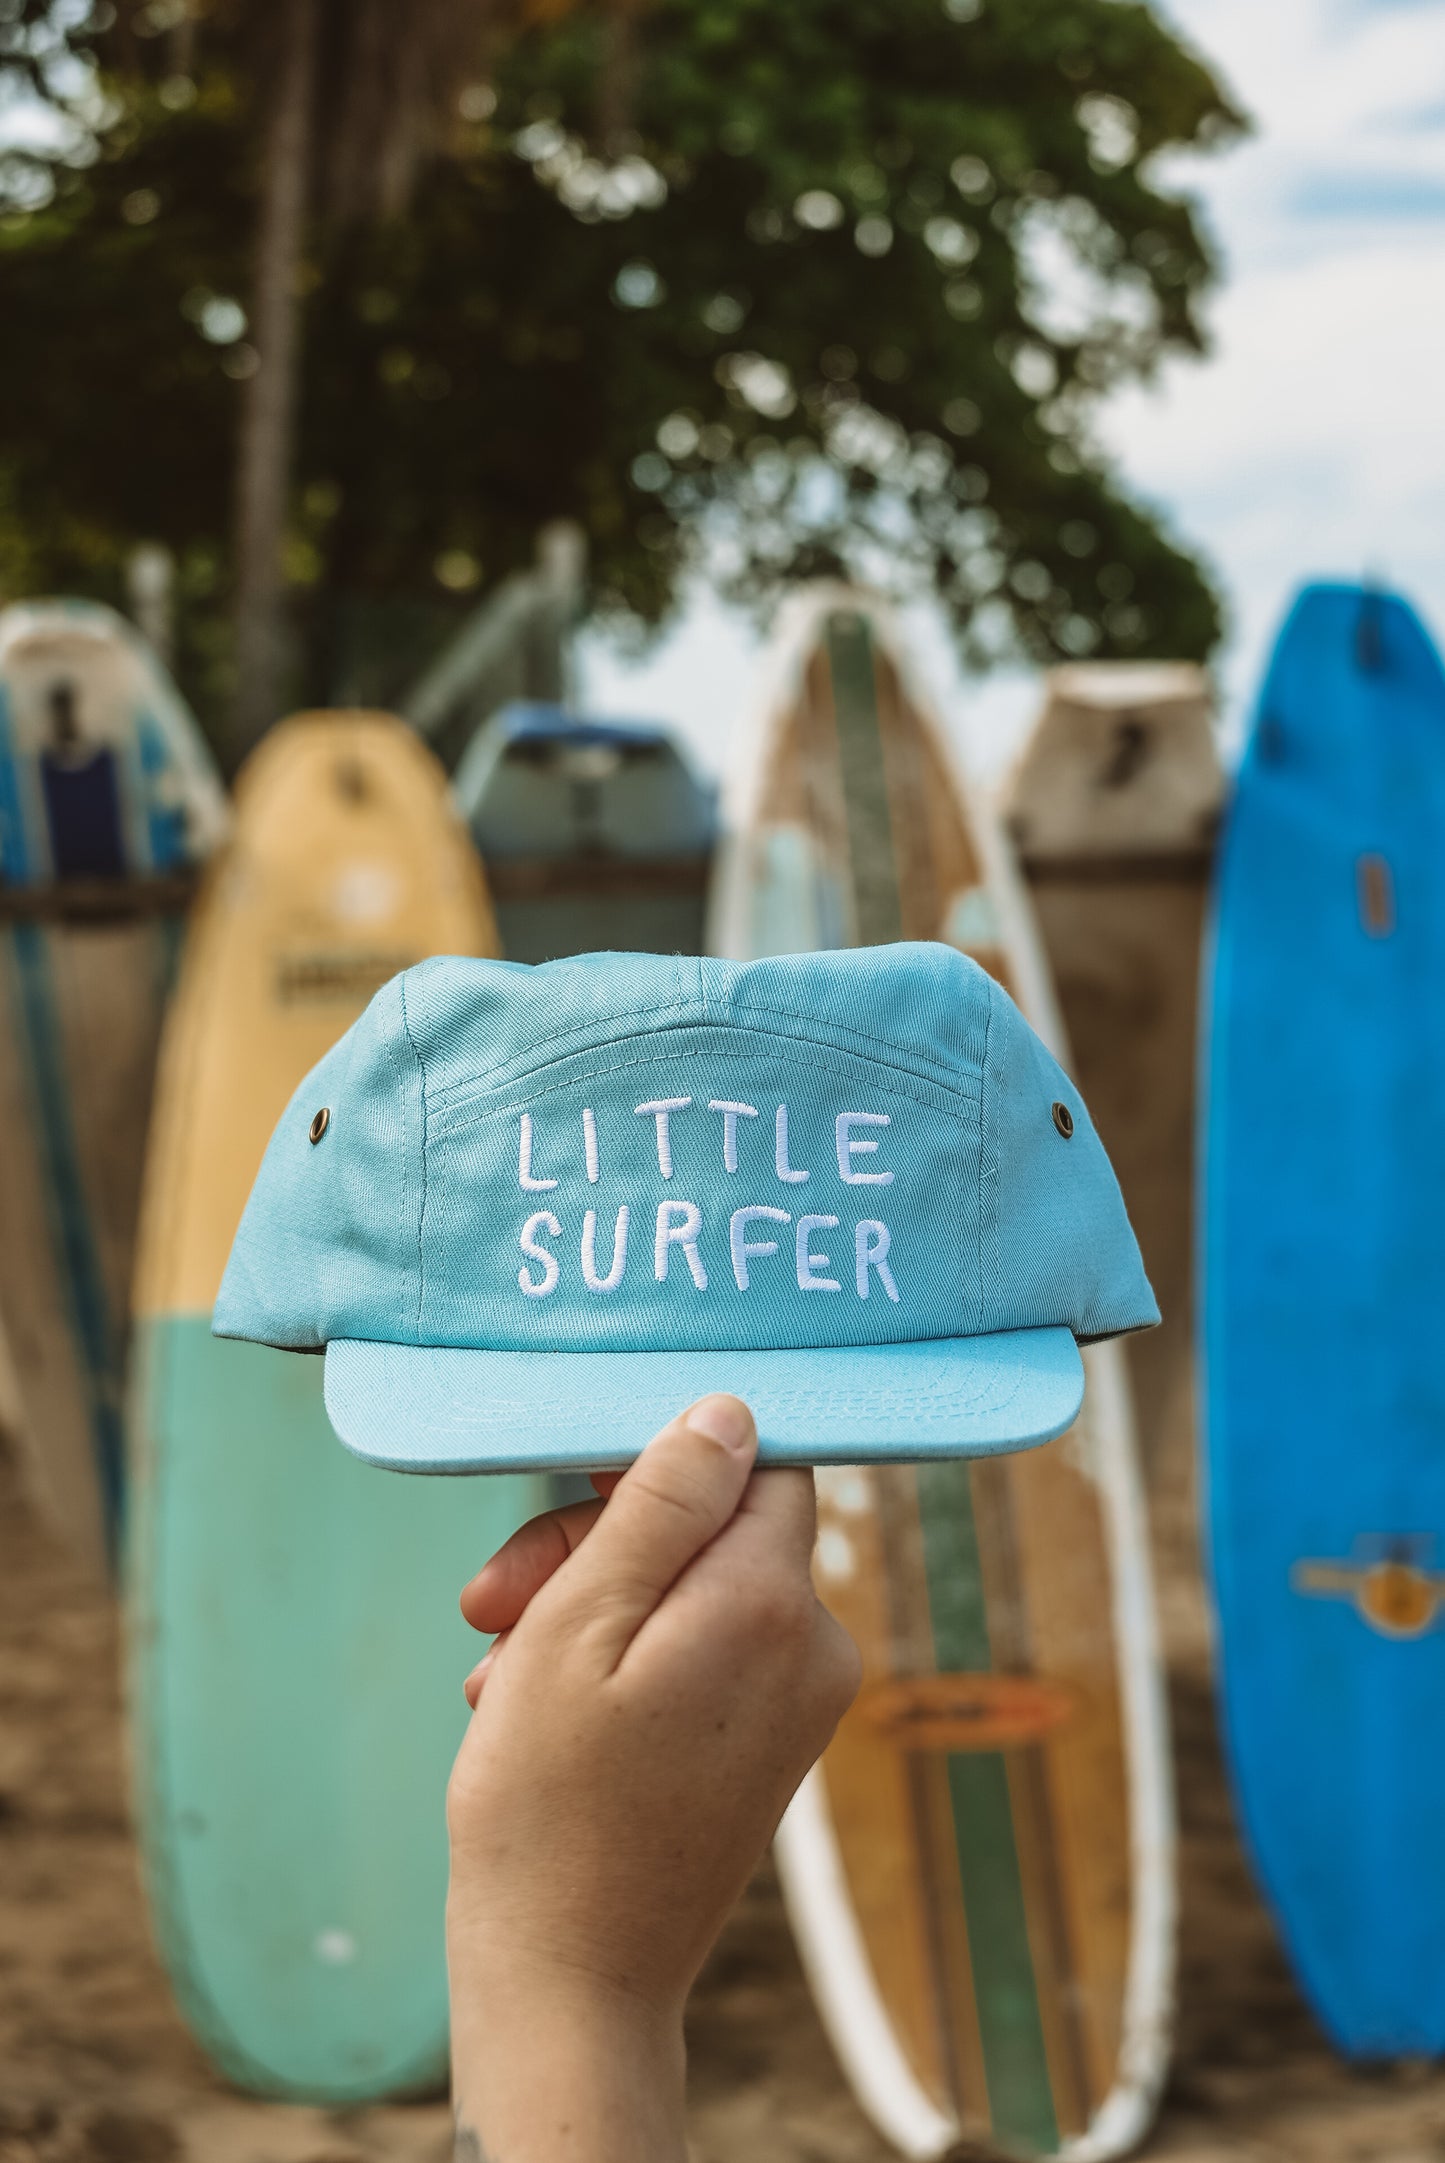 Little Surfer Cap